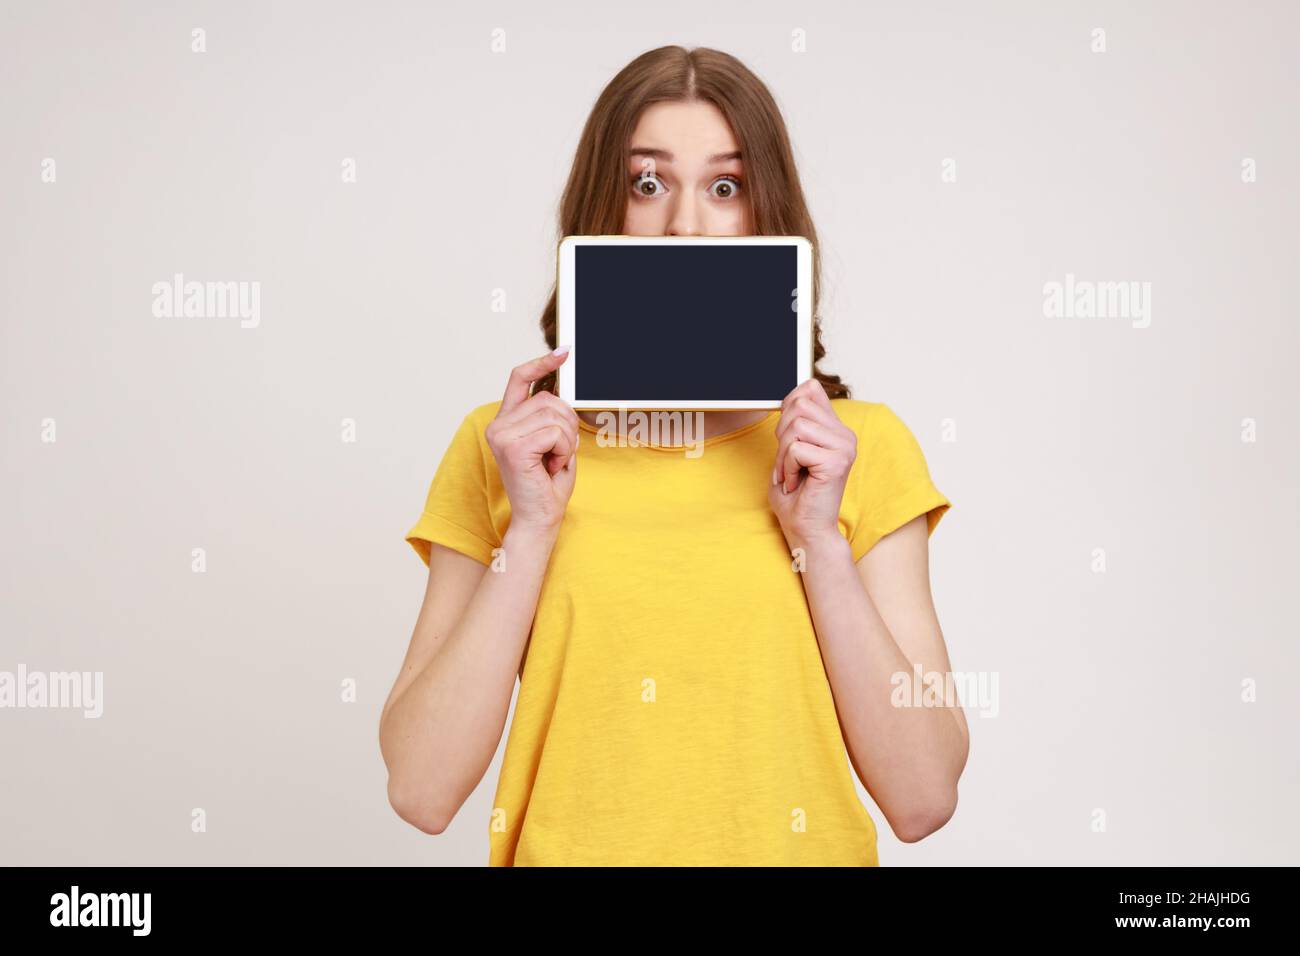 Porträt eines schönen Mädchen in gelben T-Shirt mit elektronischem Gerät, Blick auf die Kamera mit großen Augen, zeigt Tablet mit leeren schwarzen Bildschirm. Innenaufnahme des Studios isoliert auf grauem Hintergrund. Stockfoto